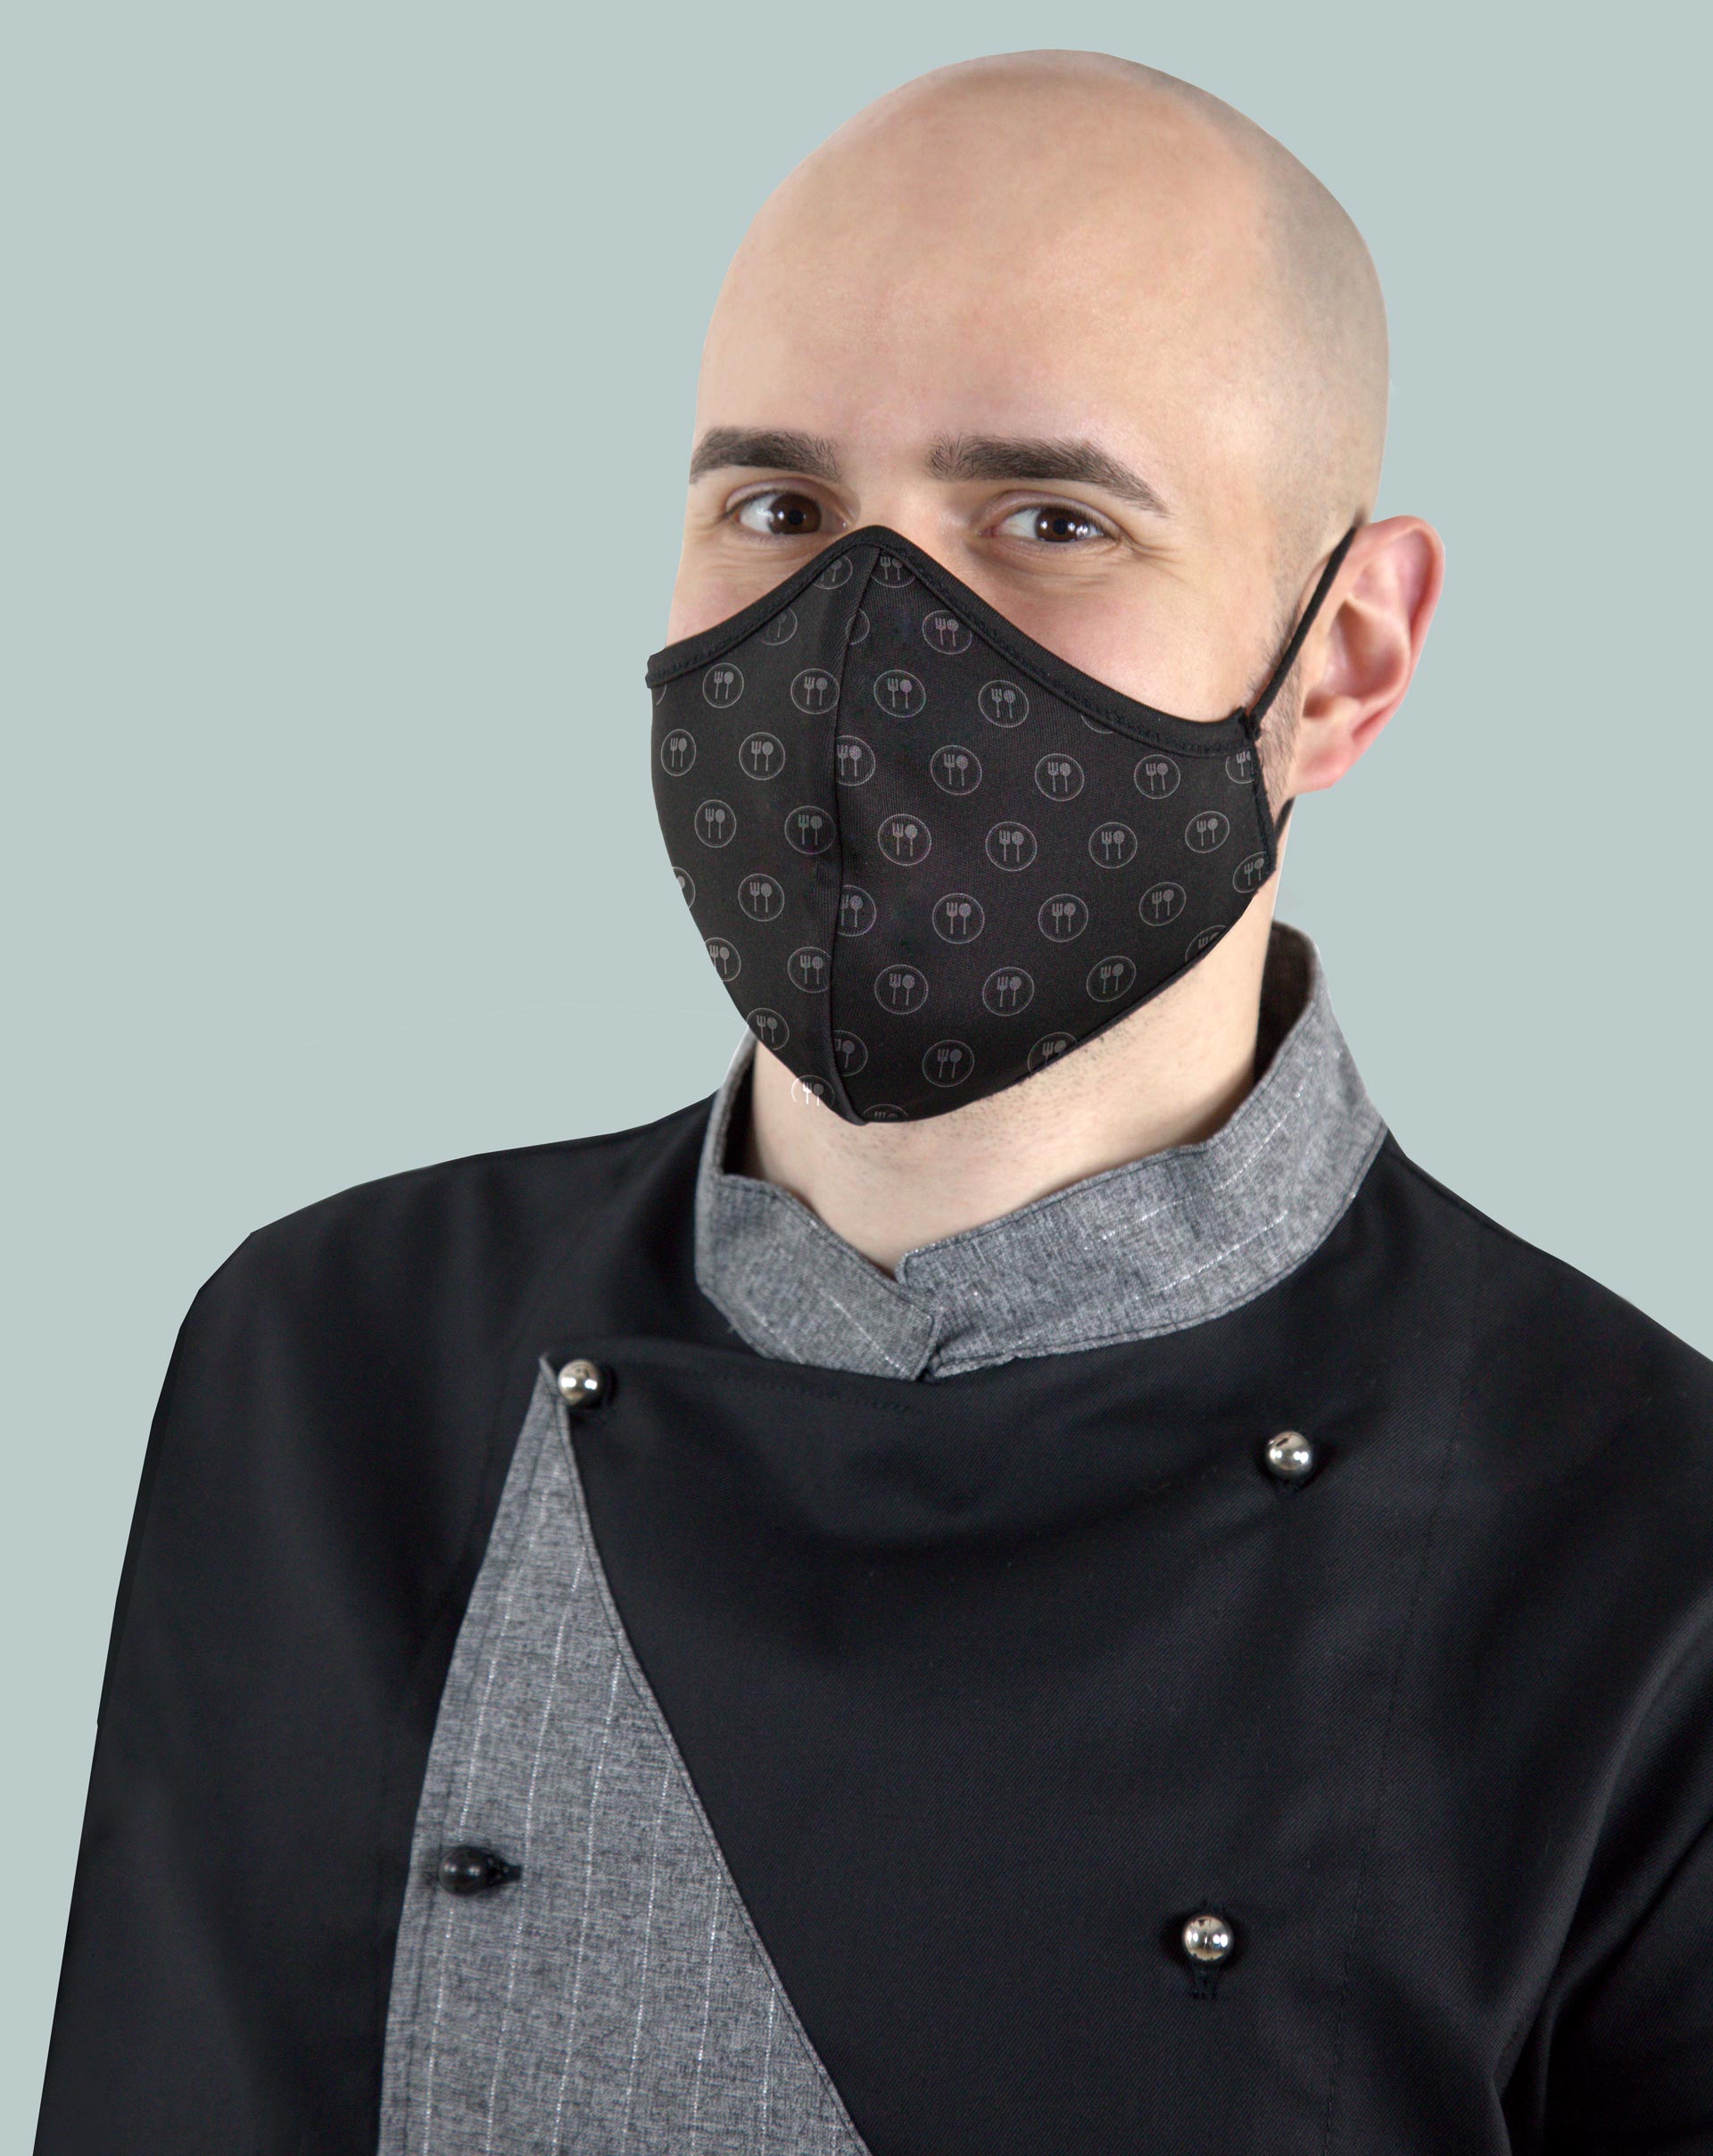 Camice da chef nero e grigio con mascherina lavabile PF2-PO9 con pattern